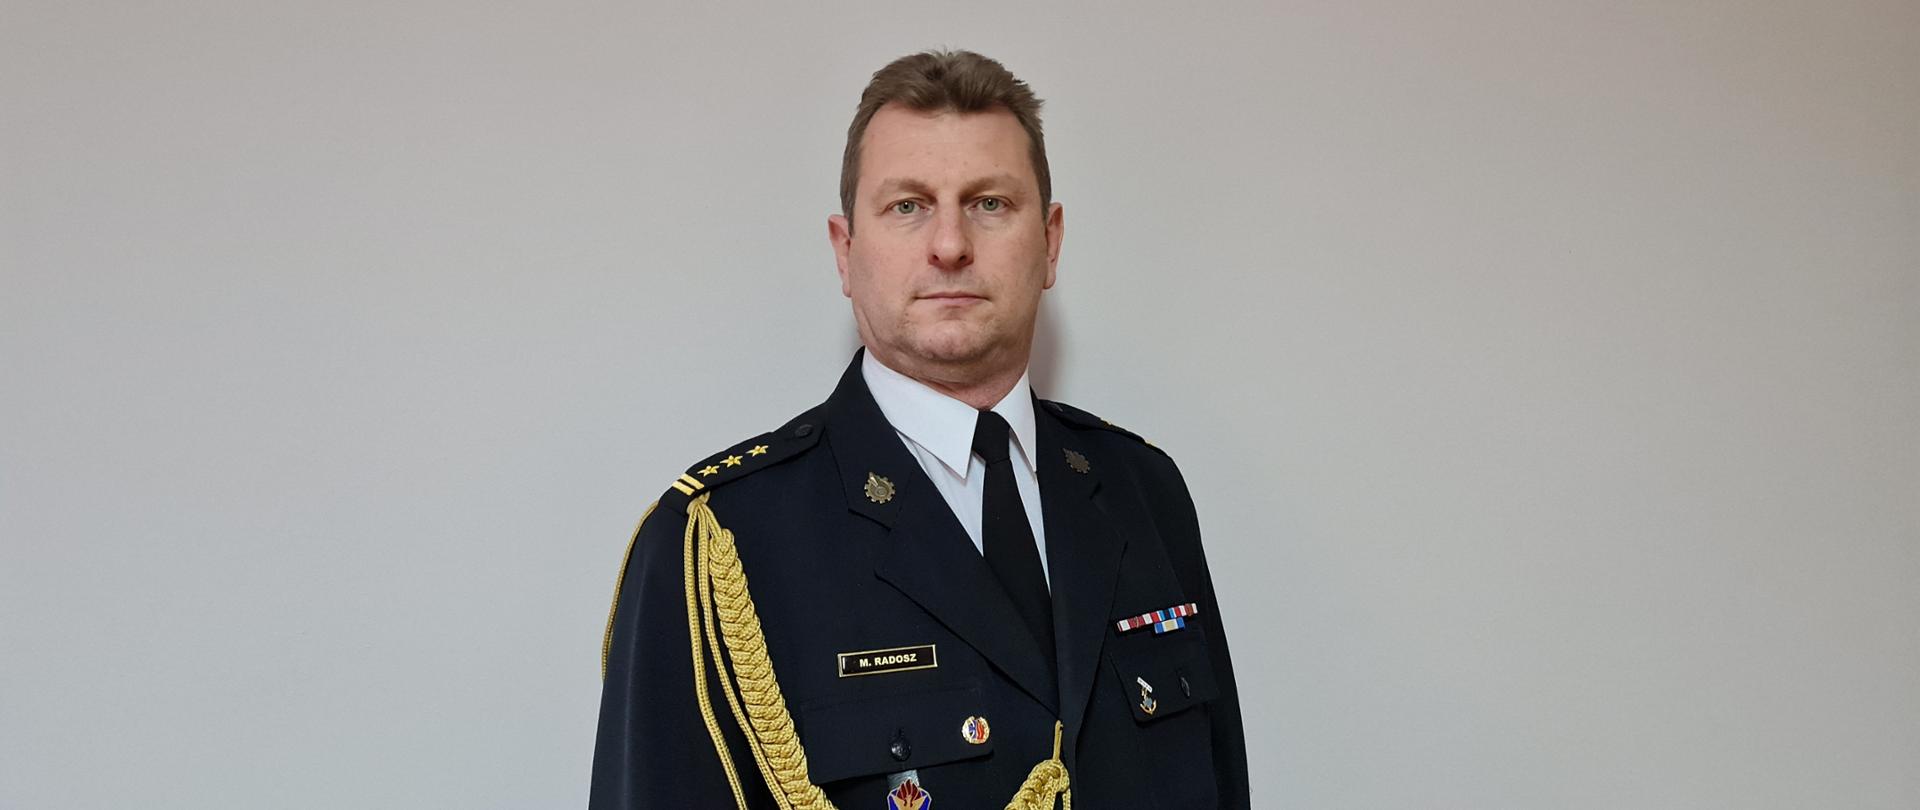 Zdjęcie przedstawia st. bryg. Marka Radosza Komendanta Miejskiego Państwowej Straży Pożarnej w Częstochowie w mundurze galowym na szarym tle. 